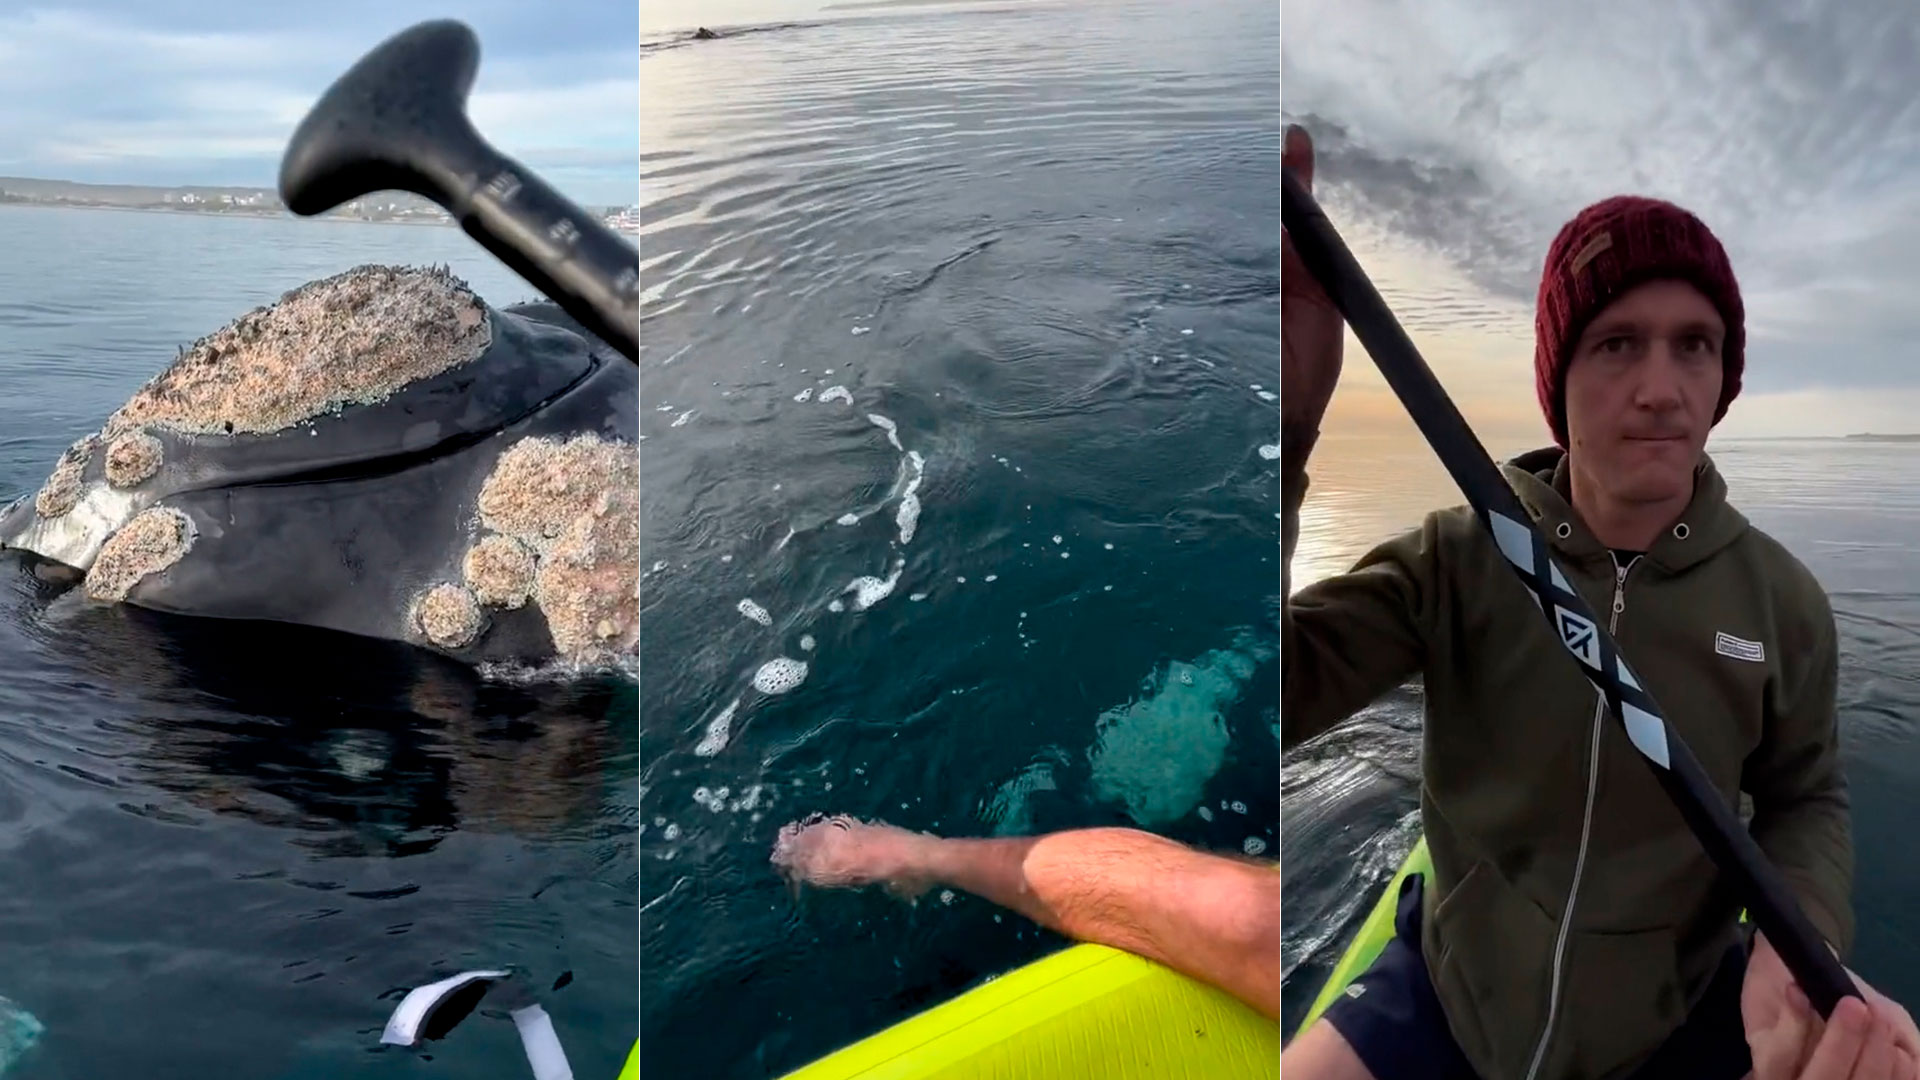 Maravilloso espectáculo en Puerto Madryn: remaban en la Costa y fueron rodeados por tres ballenas